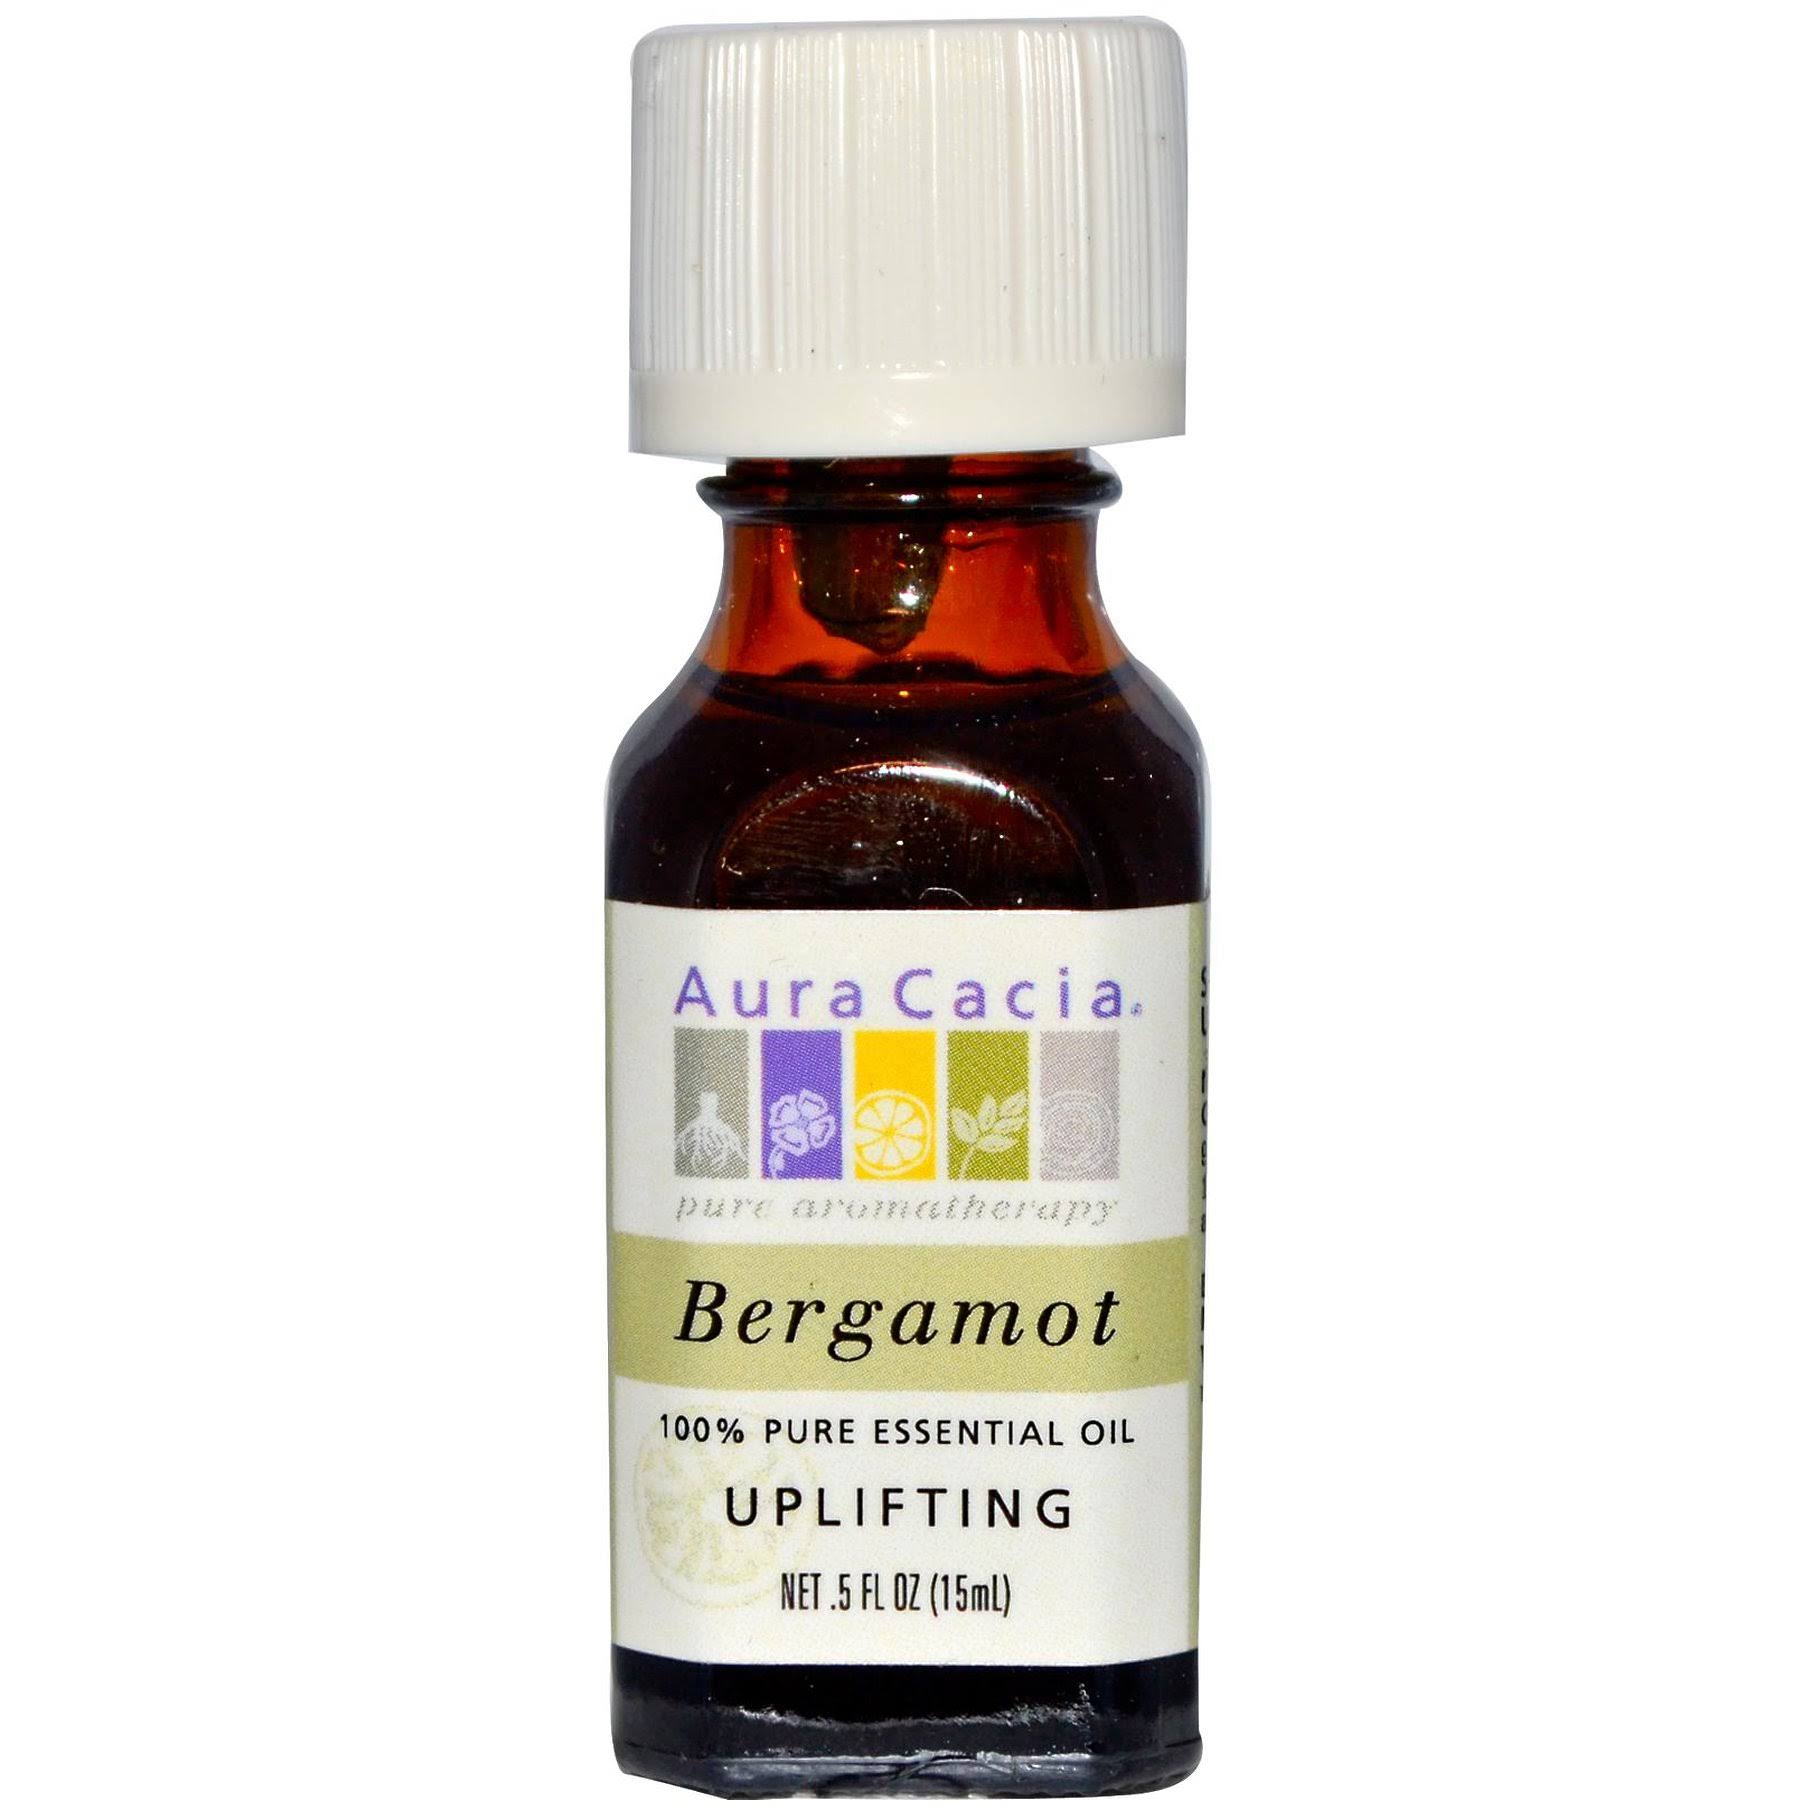 Aura Cacia Pure Essential Oil - Bergamot, 15ml